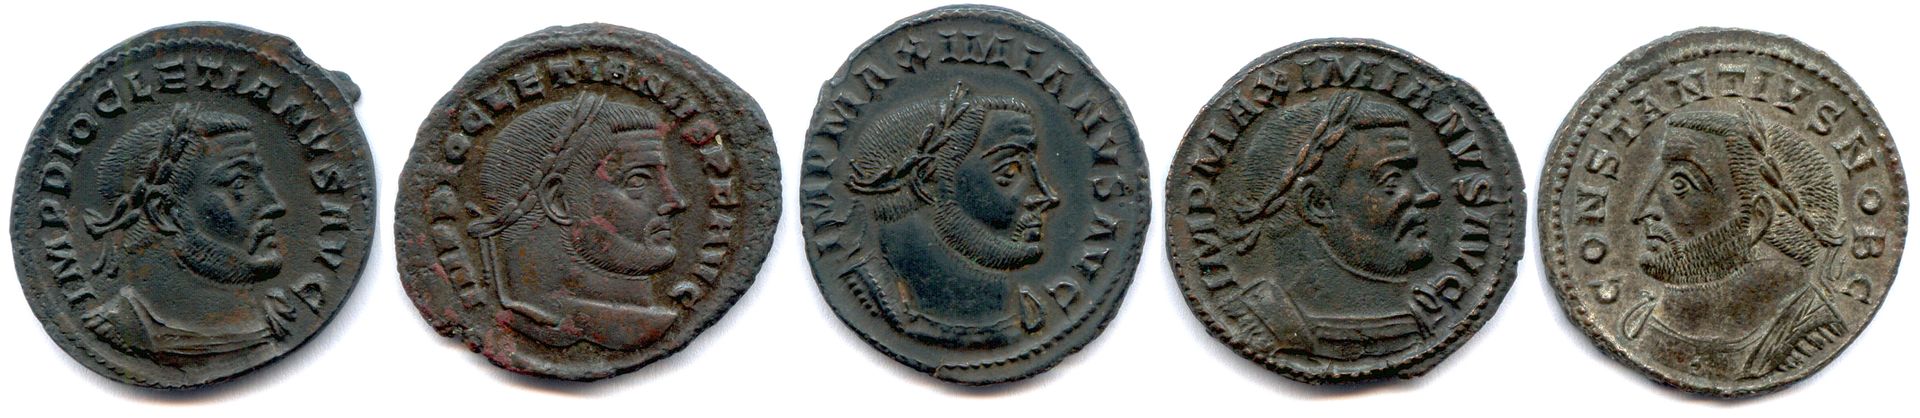 Null IMPERO ROMANO 

Cinque monete romane di bronzo (Folles): 

Diocleziano, Mas&hellip;